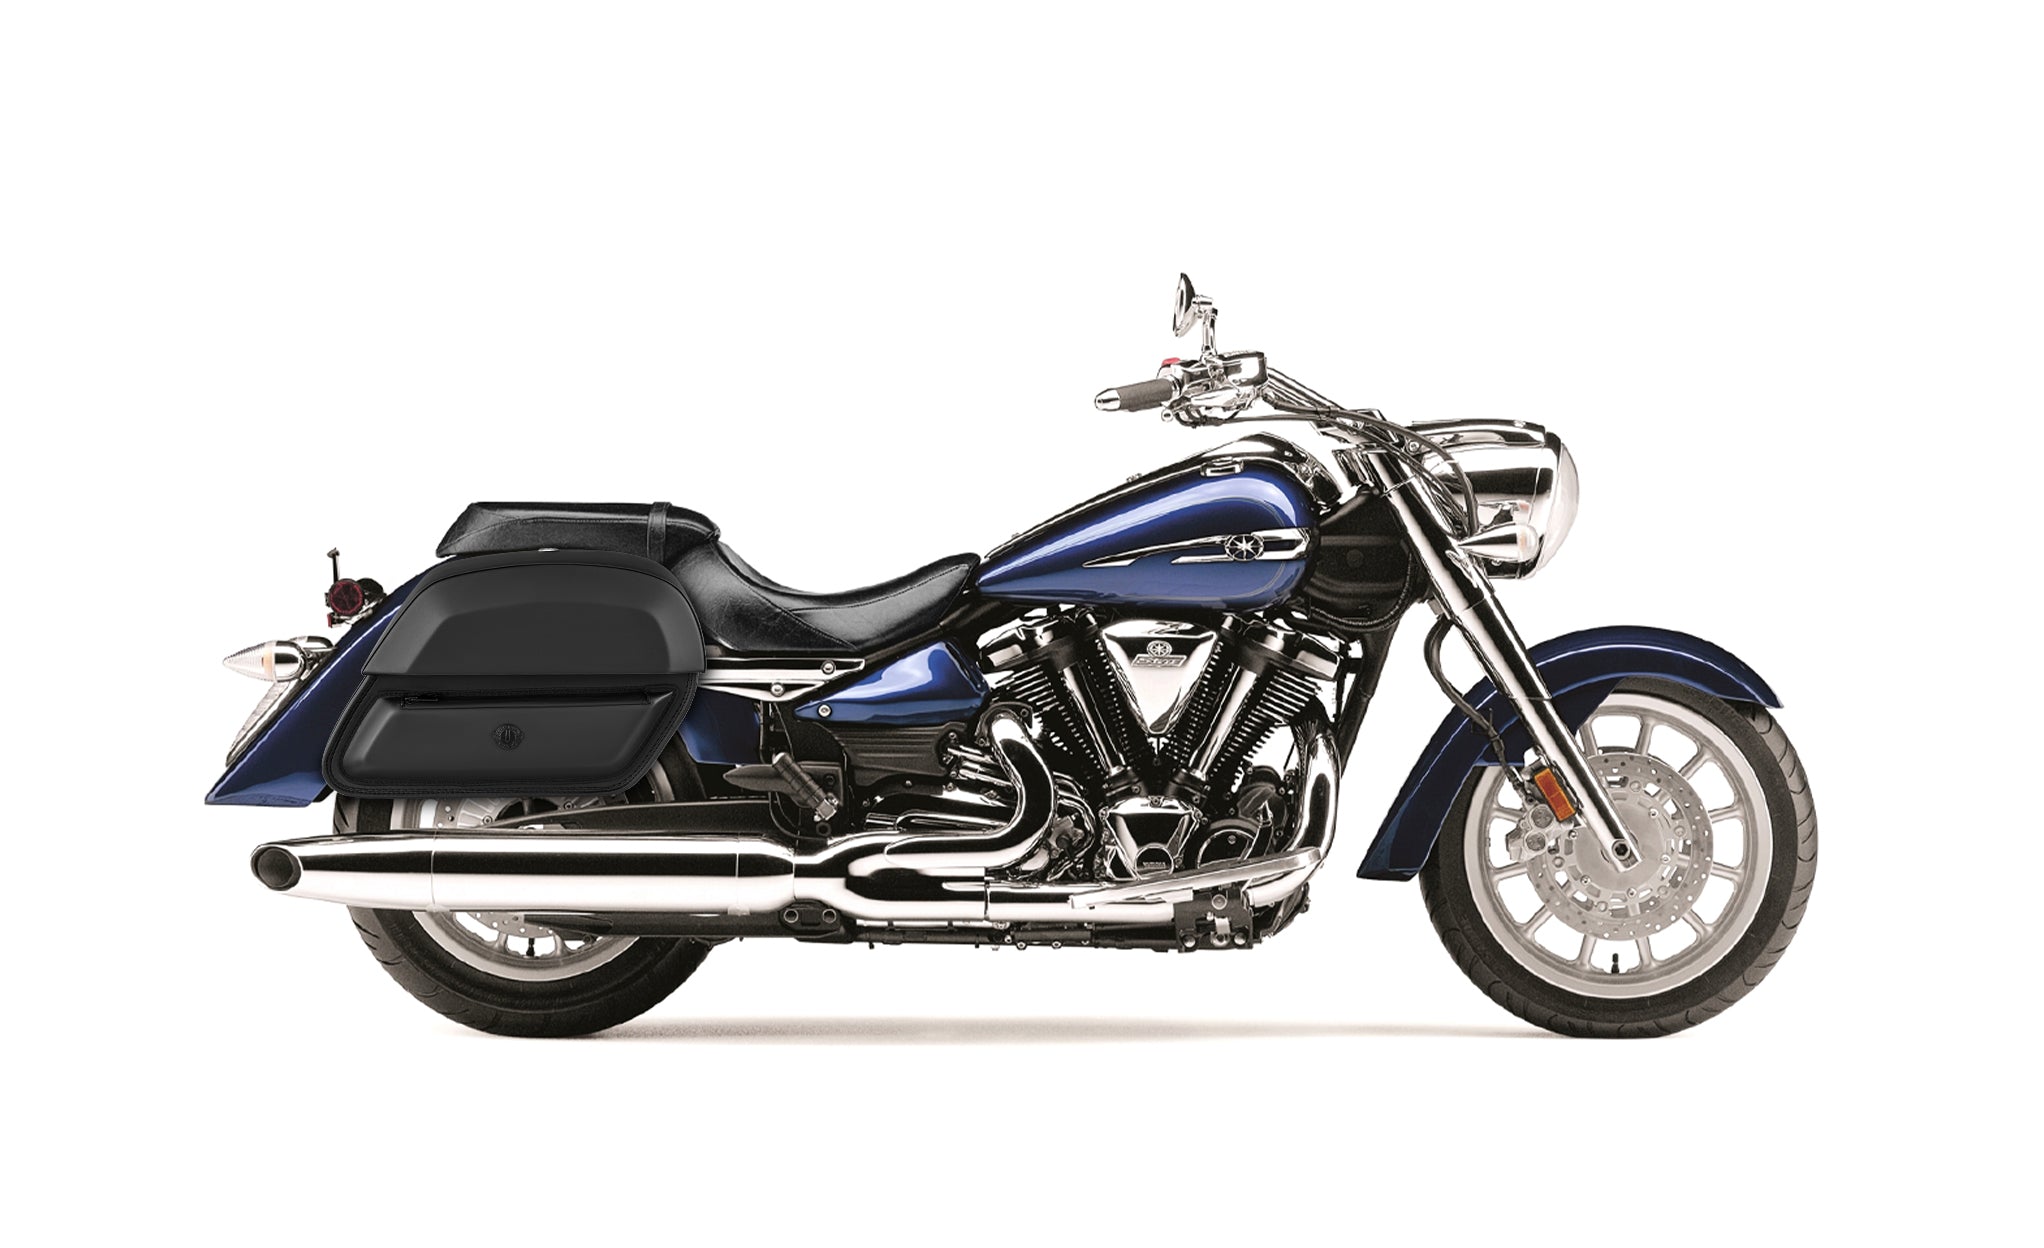 28L - Wraith Medium Yamaha Stratoliner XV 1900 Leather Motorcycle Saddlebags BAG on Bike View @expand